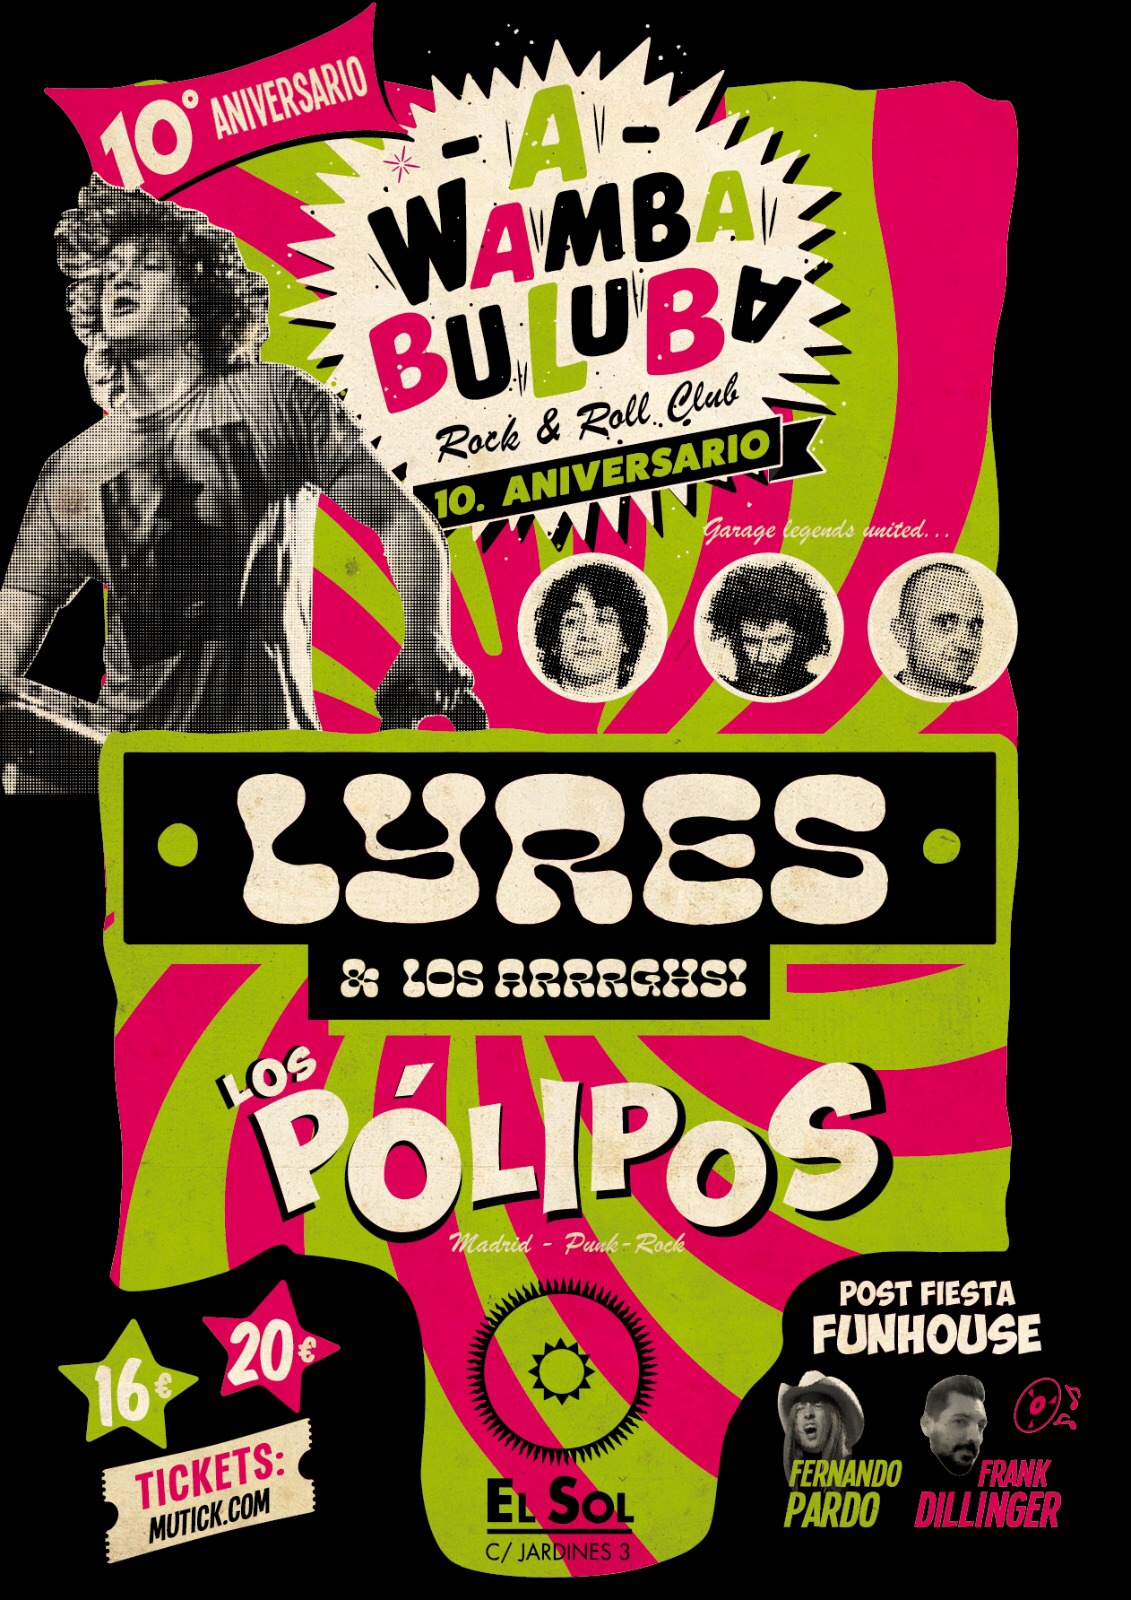 LYRES & Los Arrrghs! + Los Pólipos en Madrid - Mutick